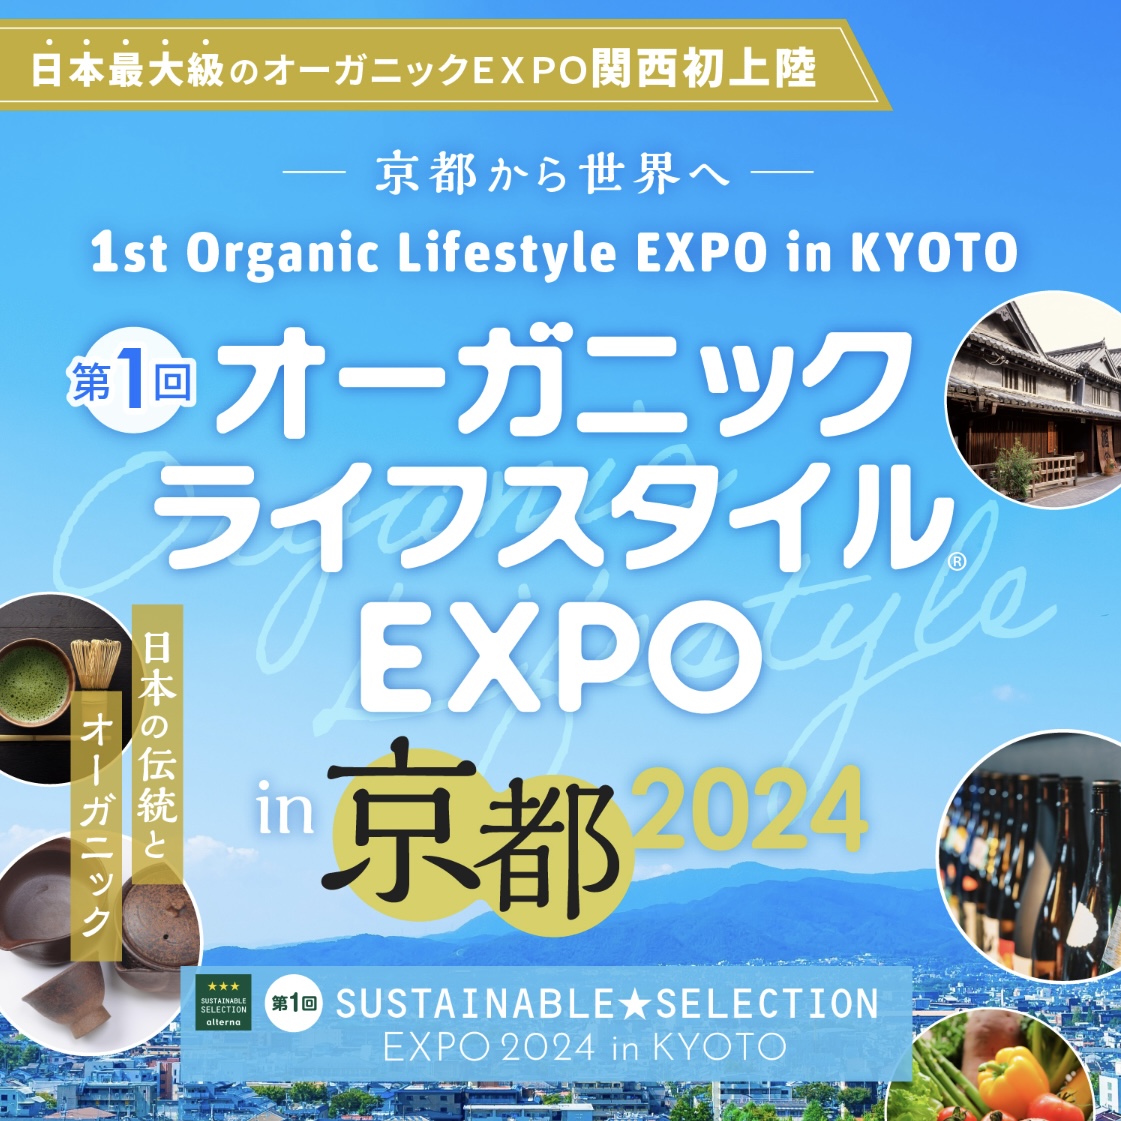 【お知らせ】オーガニックライフスタイルEXPO in 京都 2024 に出展します。